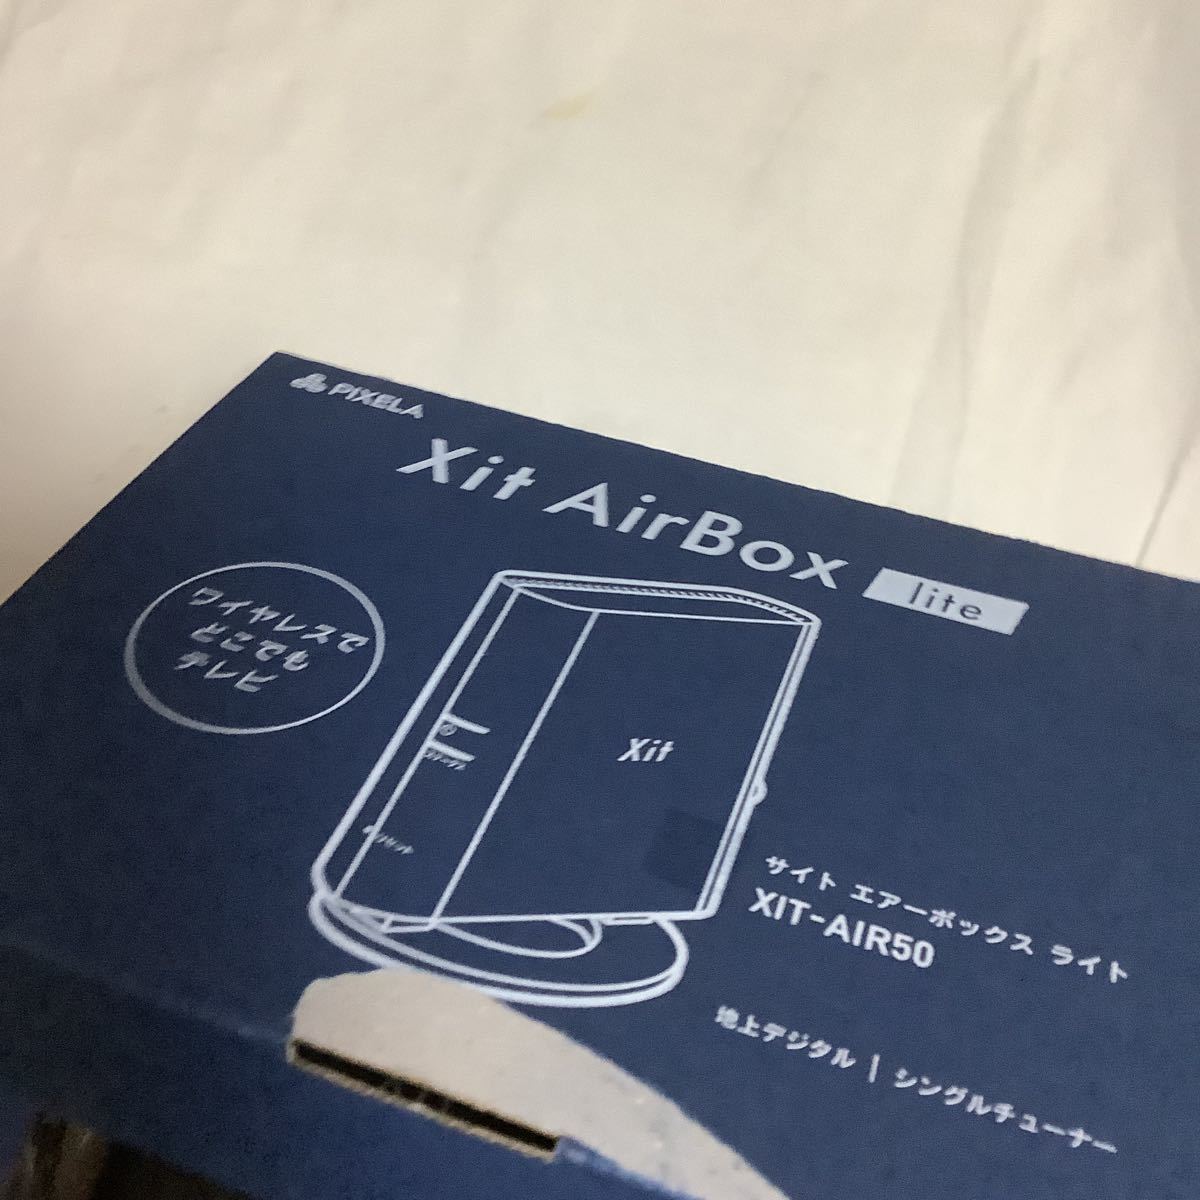 ヤフオク! - xit airbox lite XIT-AIR50 美品